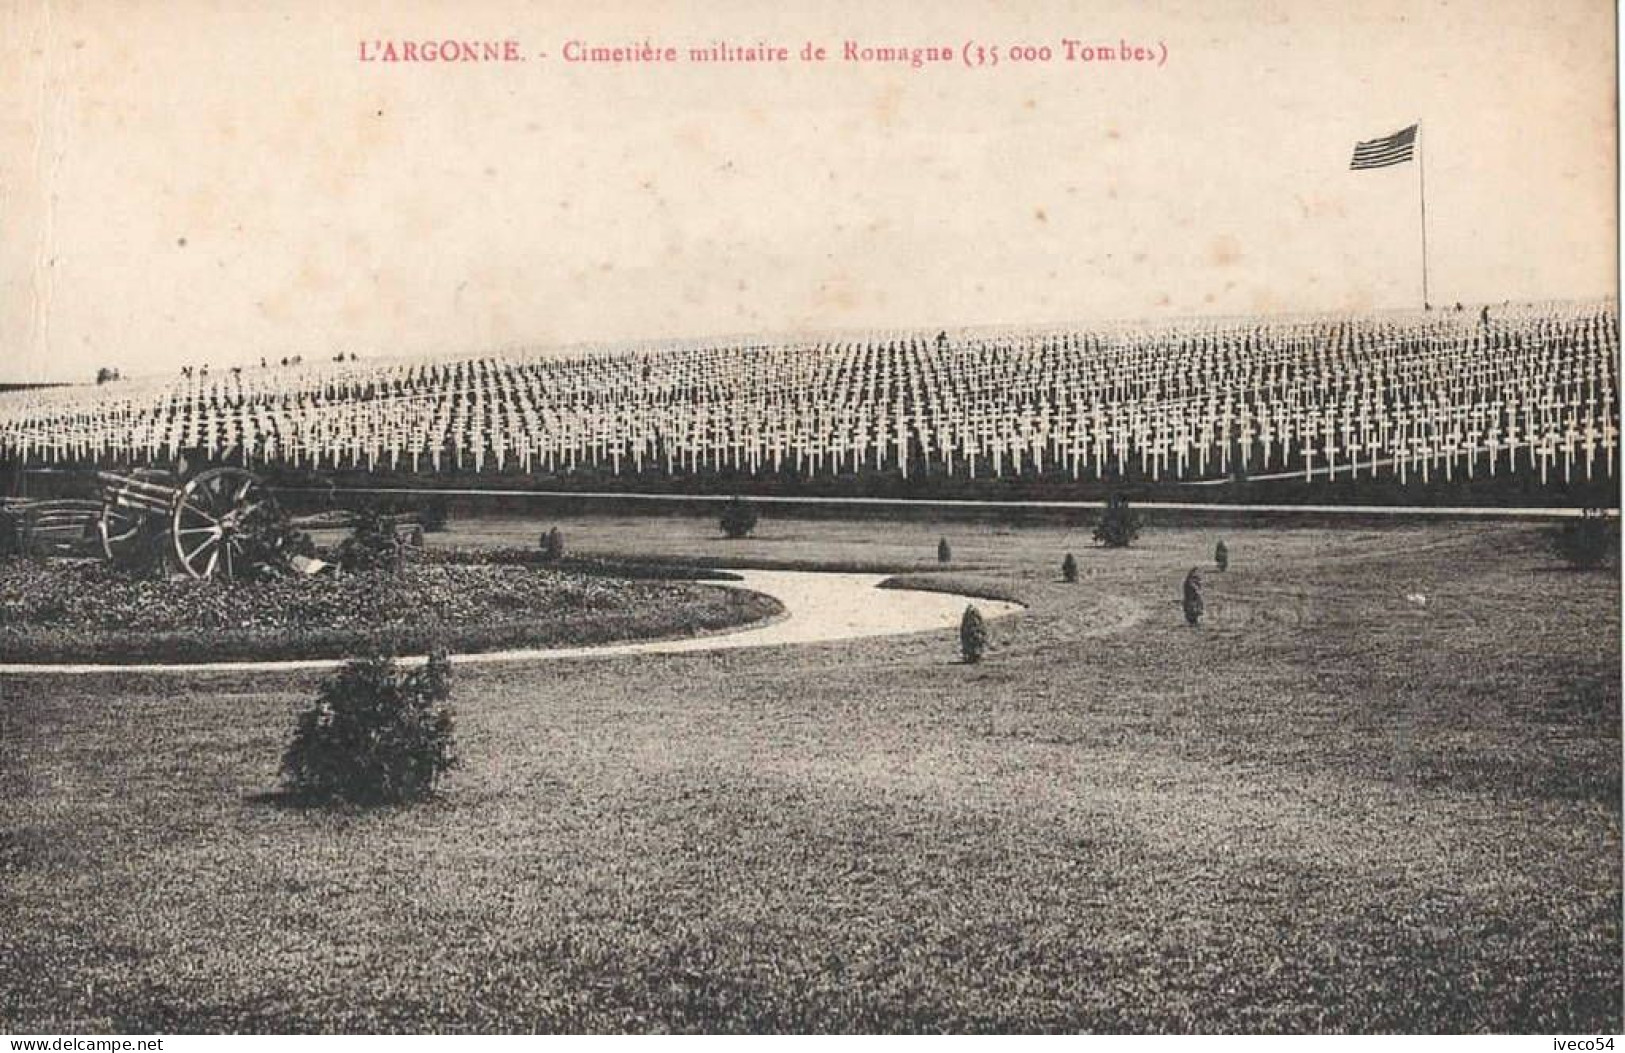 Meuse  / Argonne  Cimetière Militaire Américain     Romagne S/s Montfaucon   ( 35000  Tombes ) - War Cemeteries